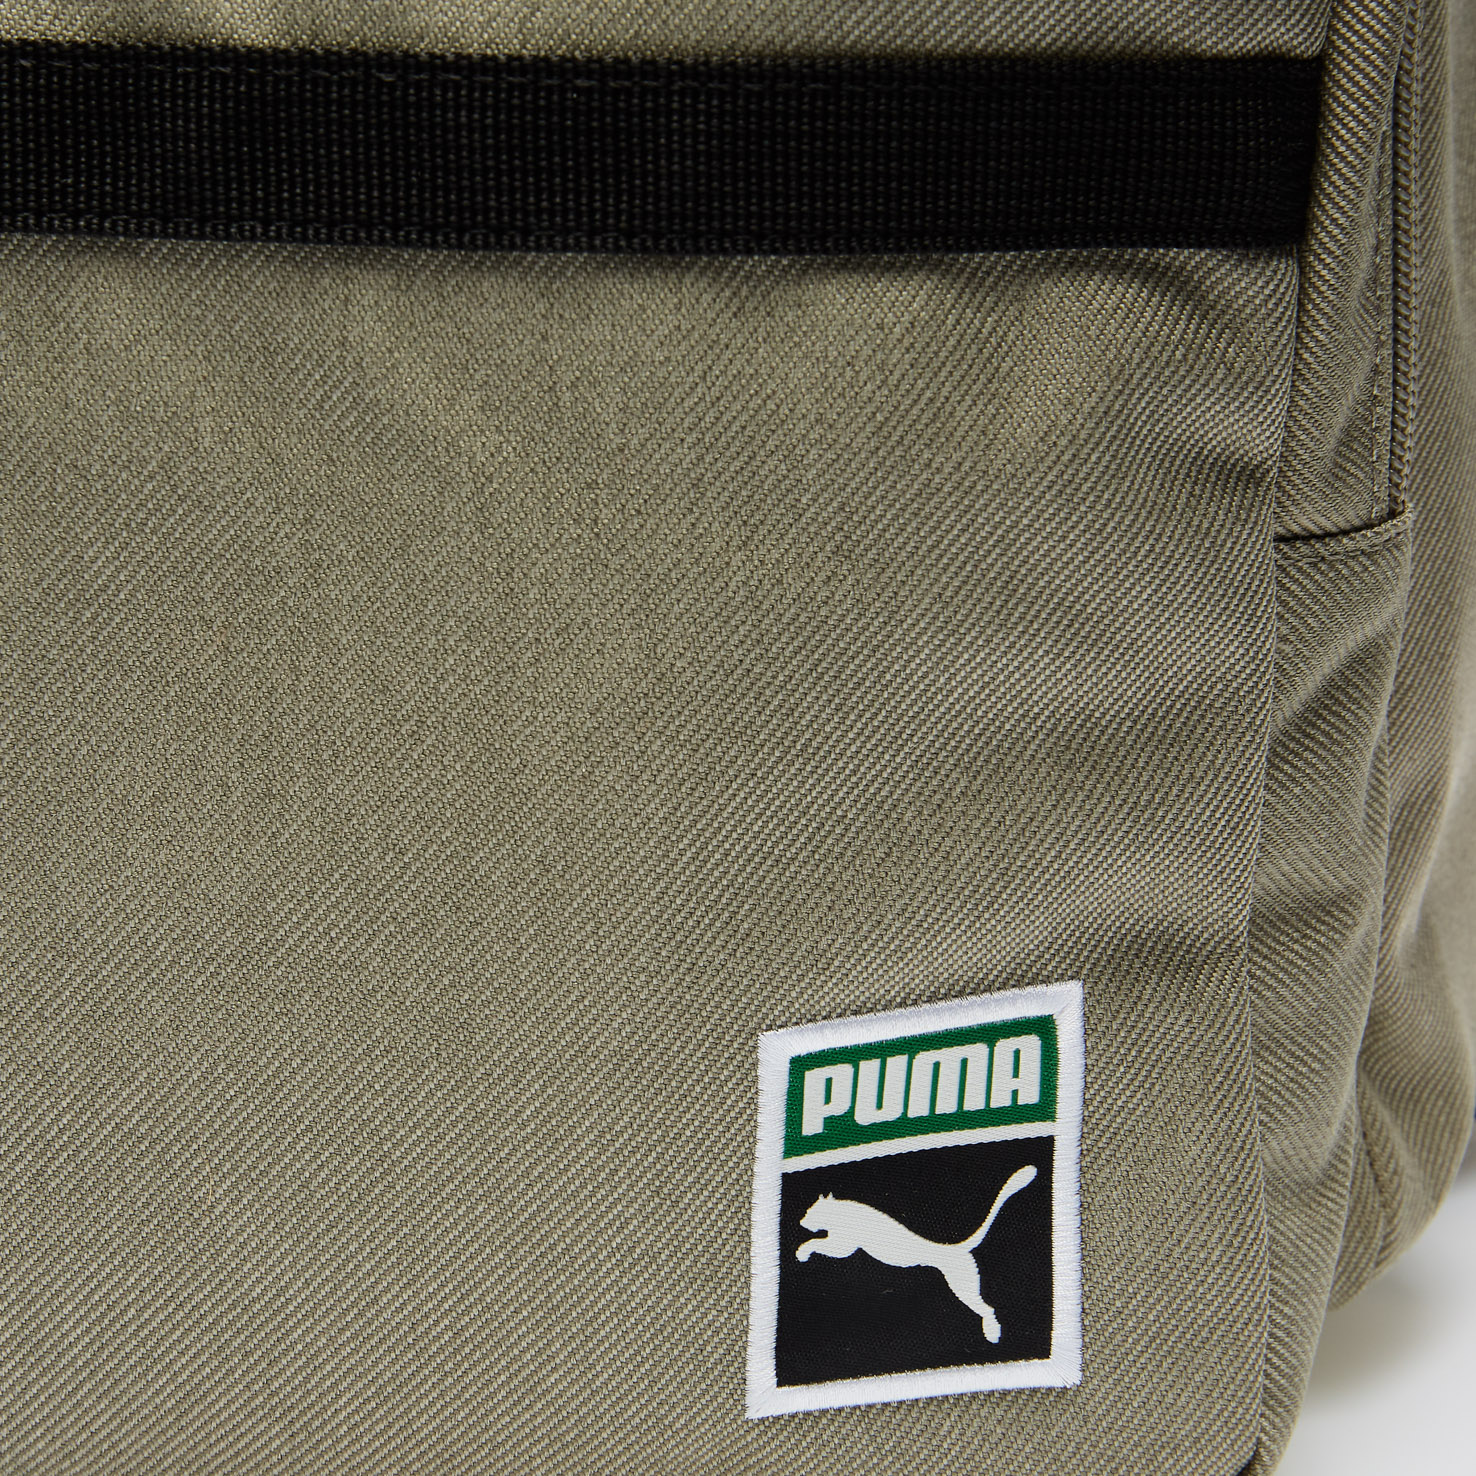 PUMA x PEANUTS Backpack PUMA, размер Один размер, цвет бежевый PM078009 - фото 4